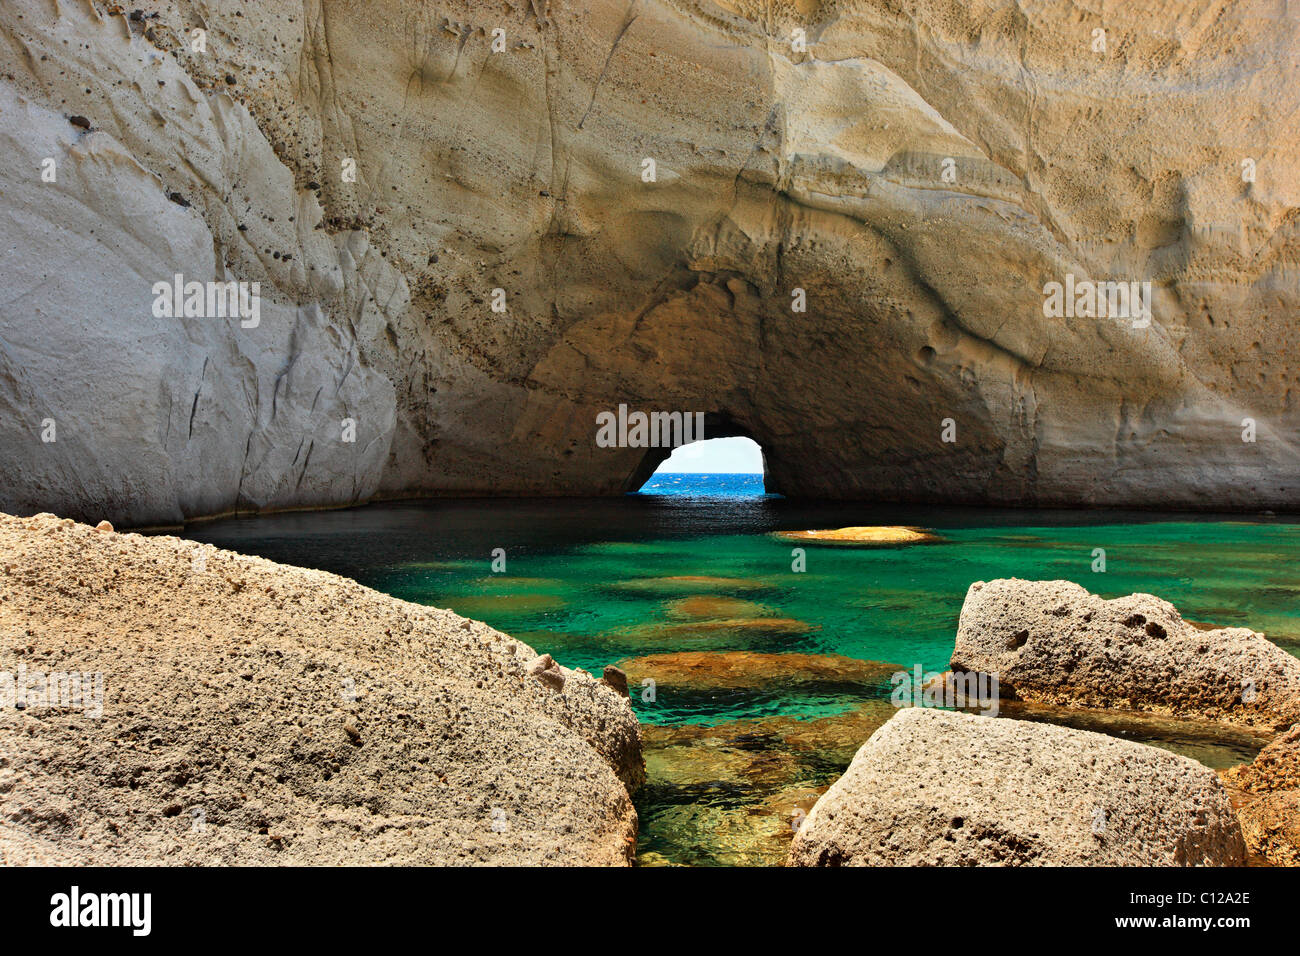 La grotte de la mer de Sykia île de Milos, Cyclades, en Grèce. Banque D'Images